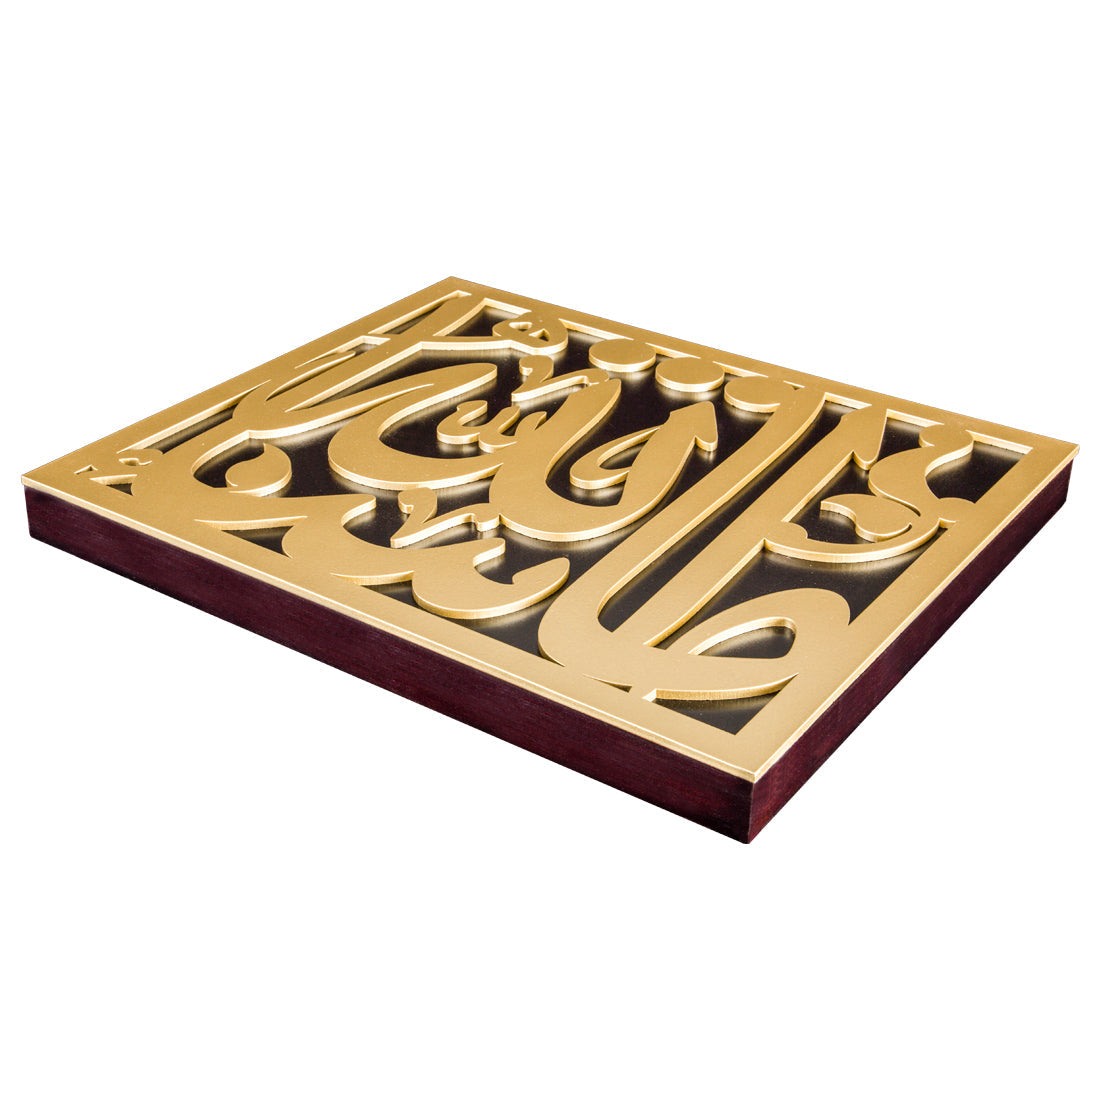 Ma Sha' Allah Gold Luxury Frame - Large Size